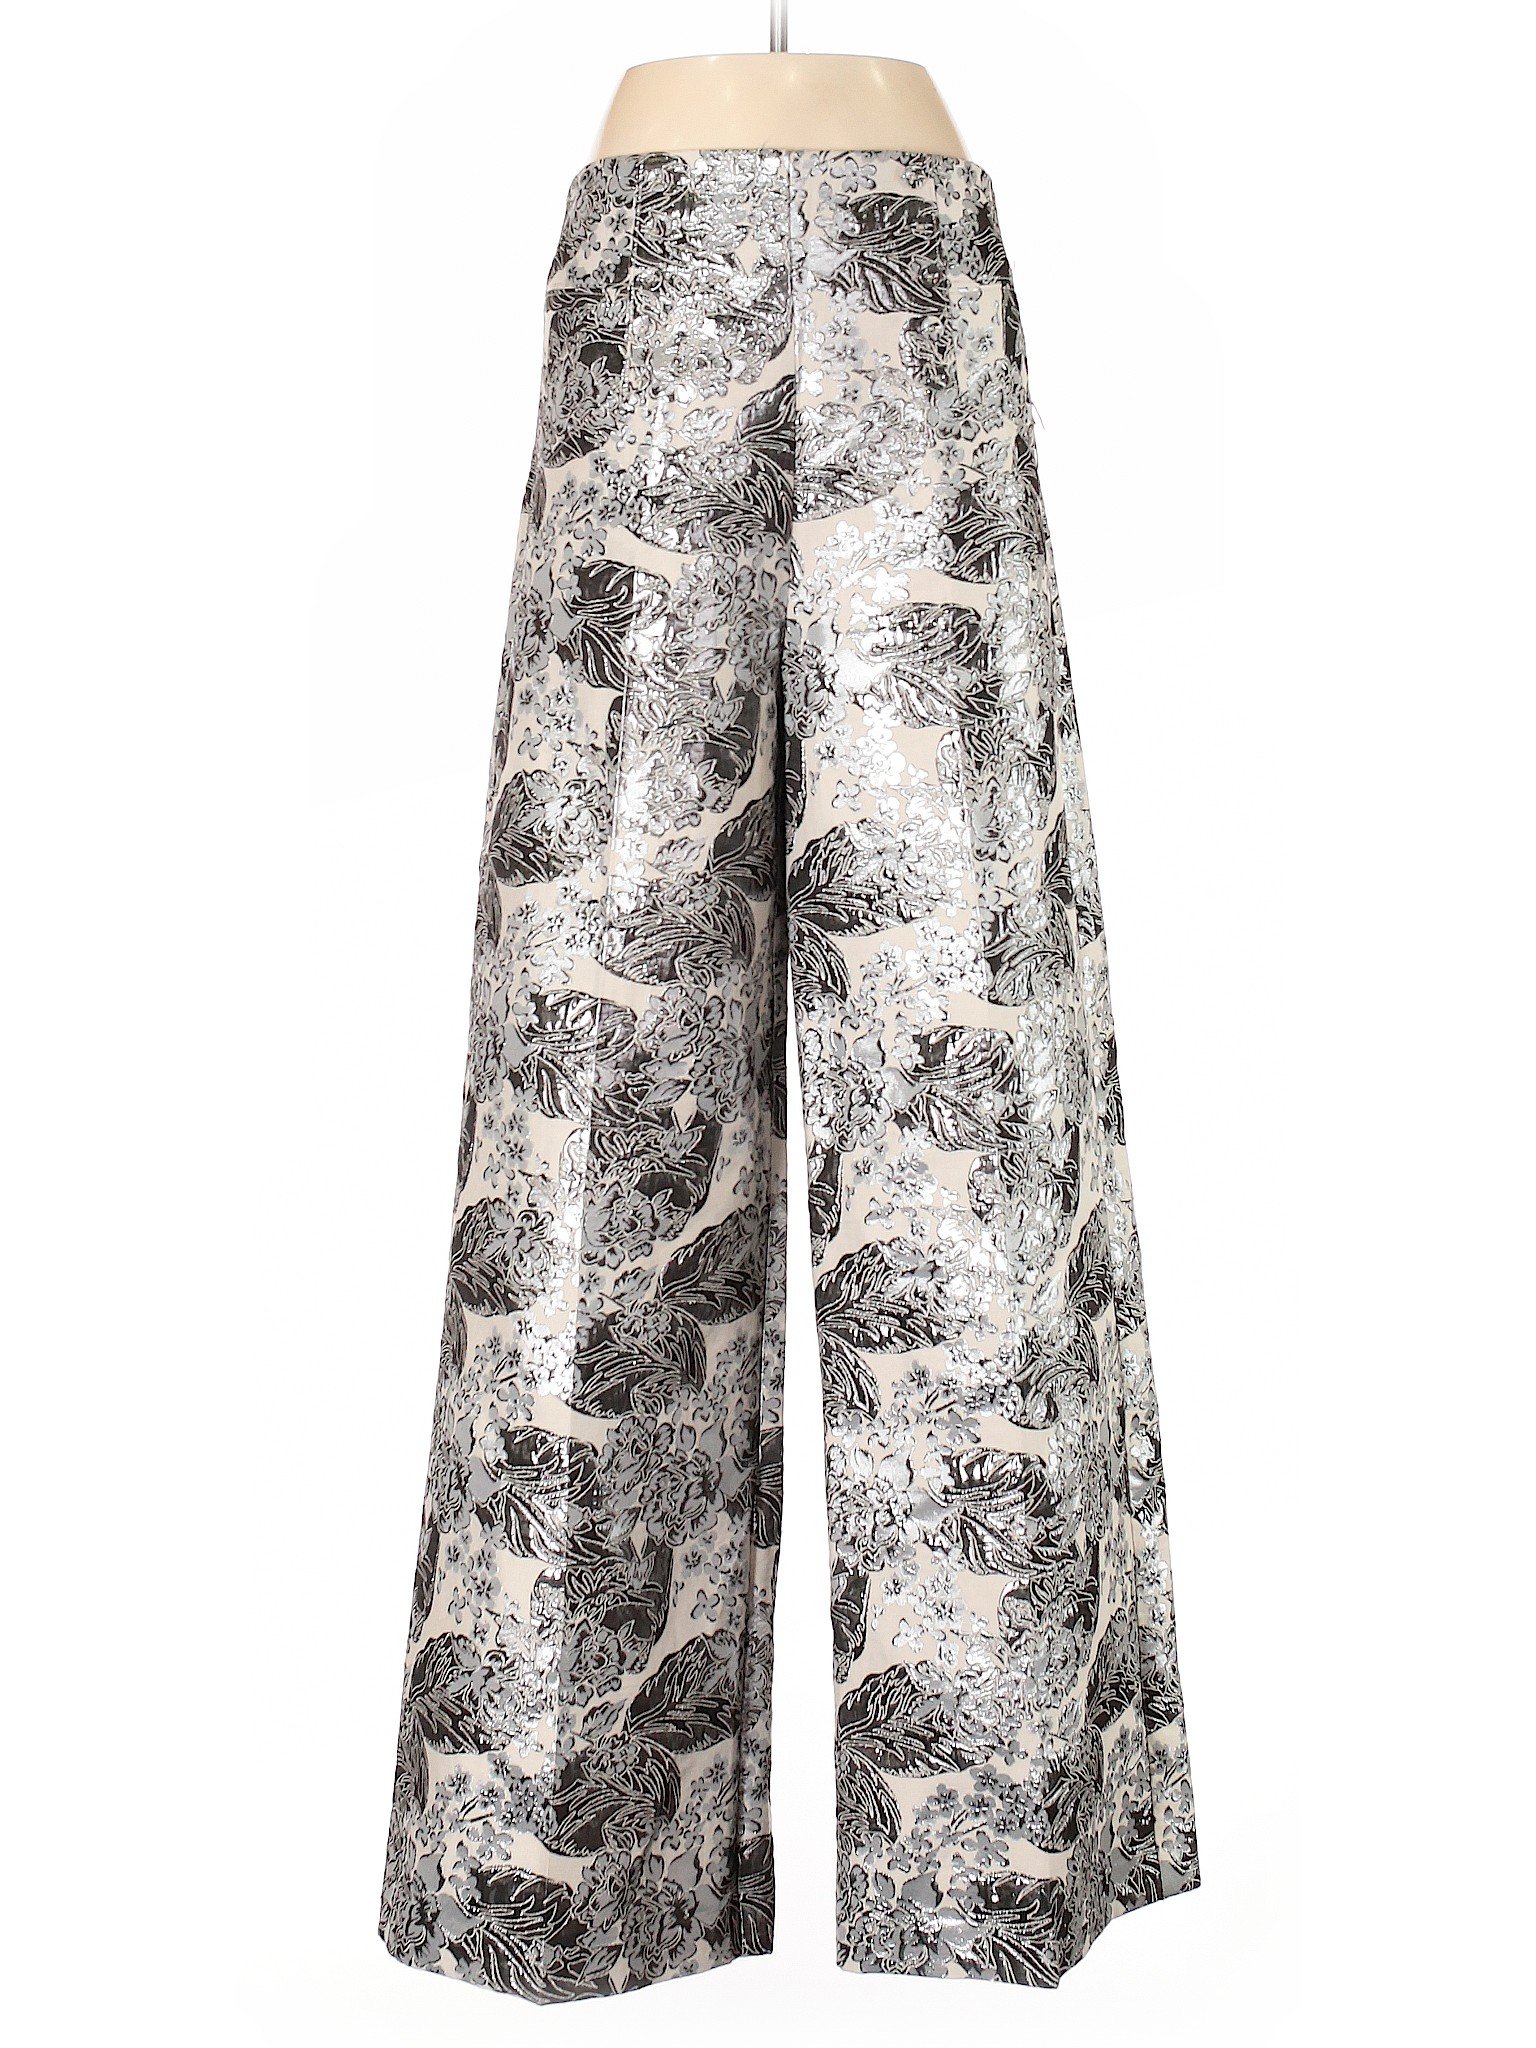 NWT NY&C Women Silver Dress Pants 8 | eBay